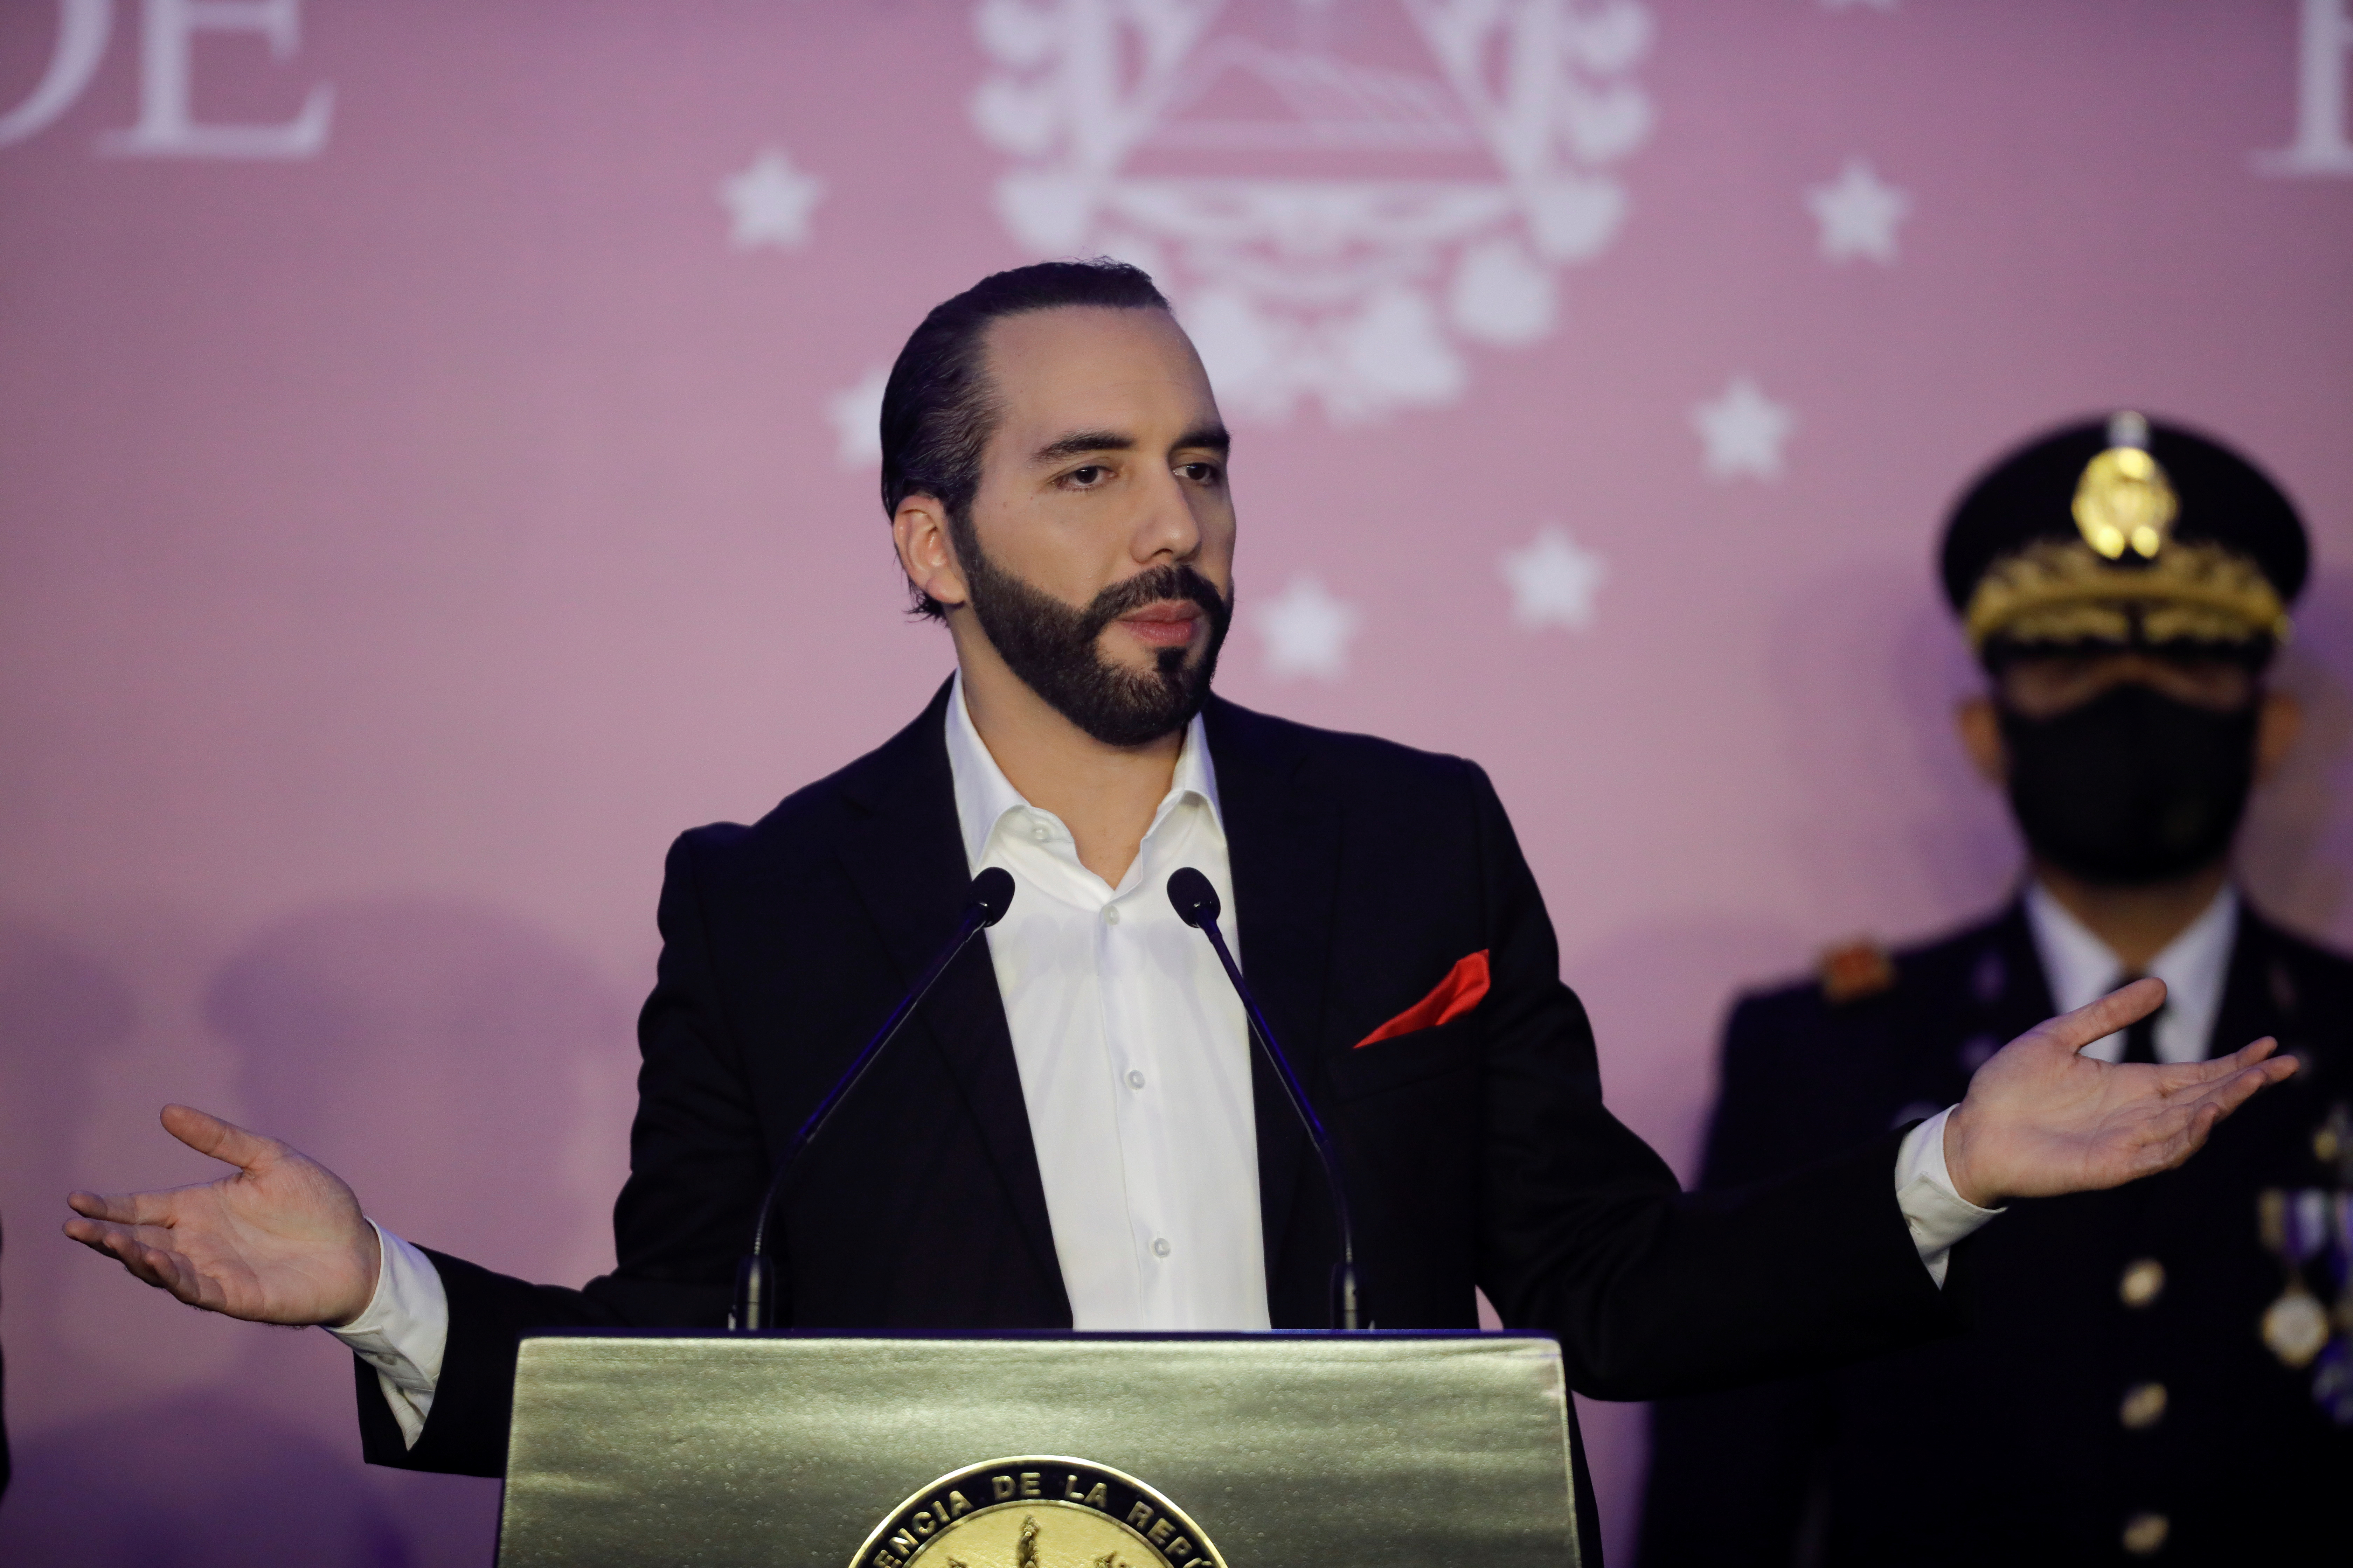 El presidente de El Salvador, Nayib Bukele, encendió las alarmas internacionales por su estilo autocrático y la decisión de barrer con la los jueces de la Corte Suprema y el fiscal general apoyado en su mayoría parlamentaria